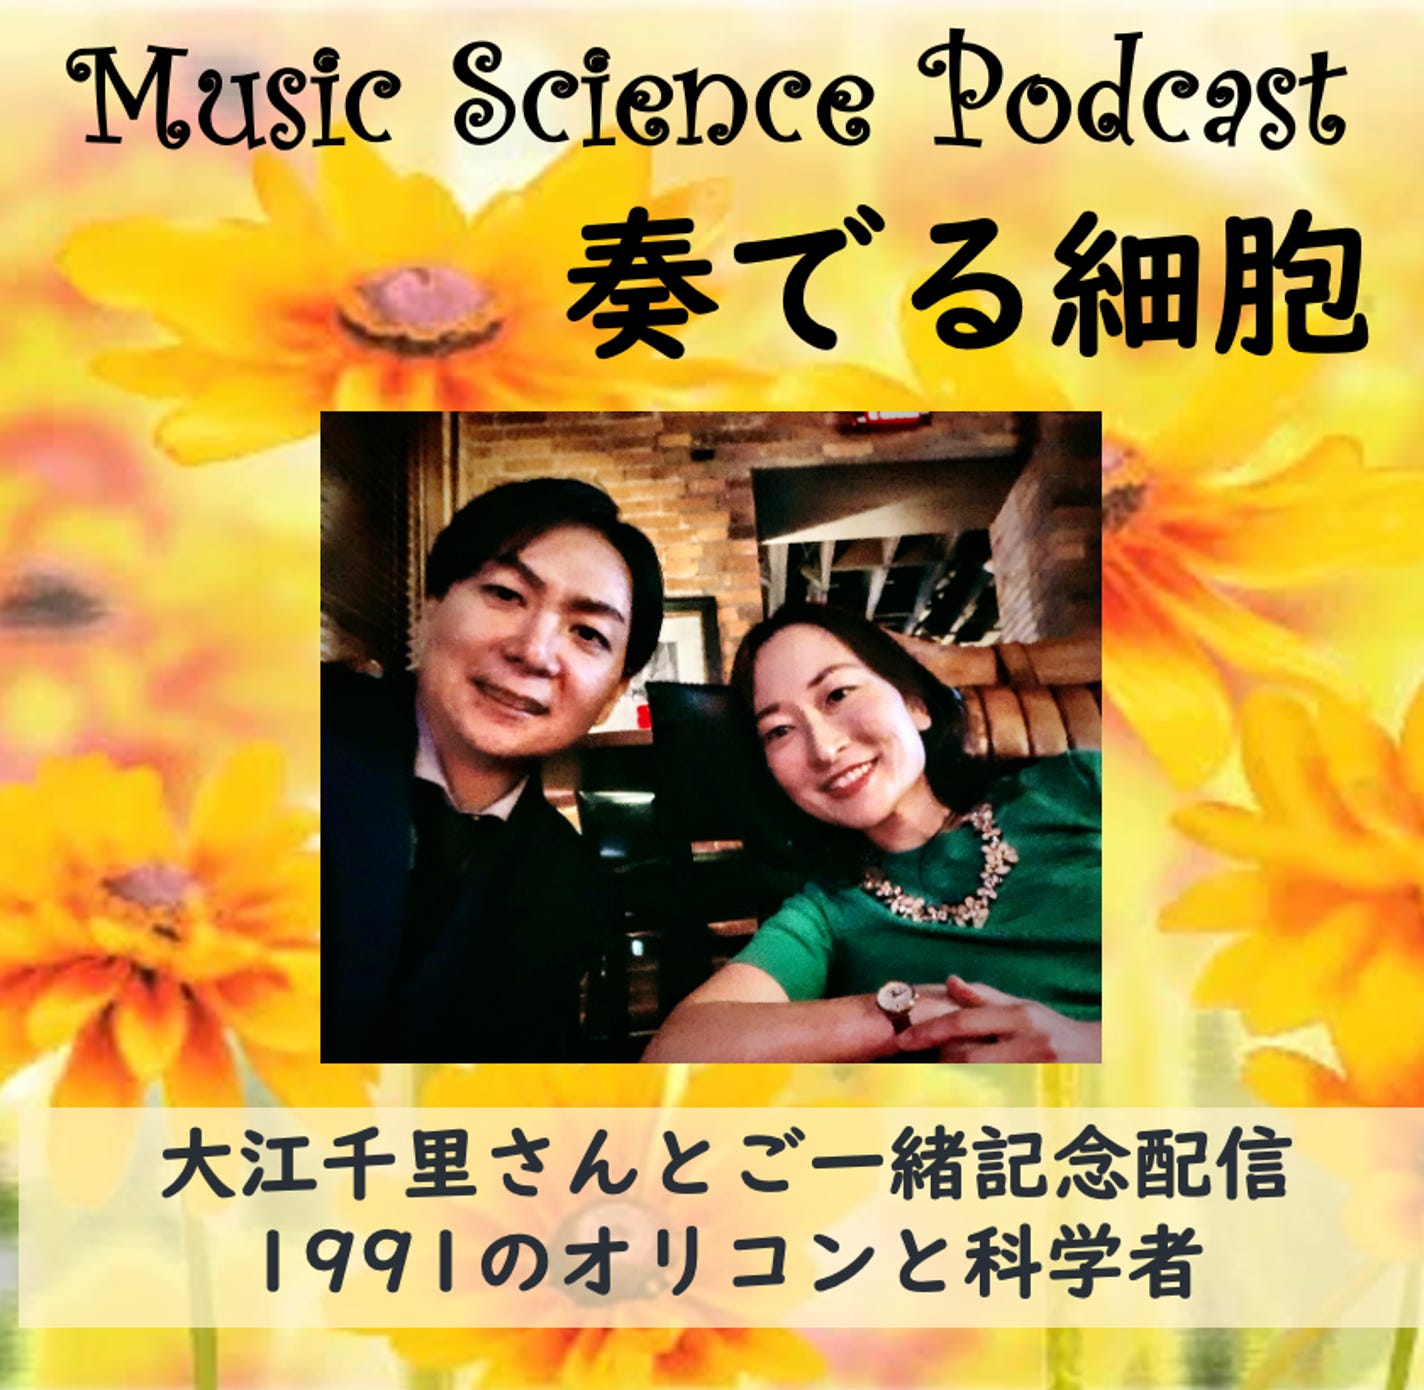 【奏でる細胞 MUSIC&SCIENCE PODCAST】「大江千里さんとご一緒記念配信 コンサートと1991年オリコンを語ろう」